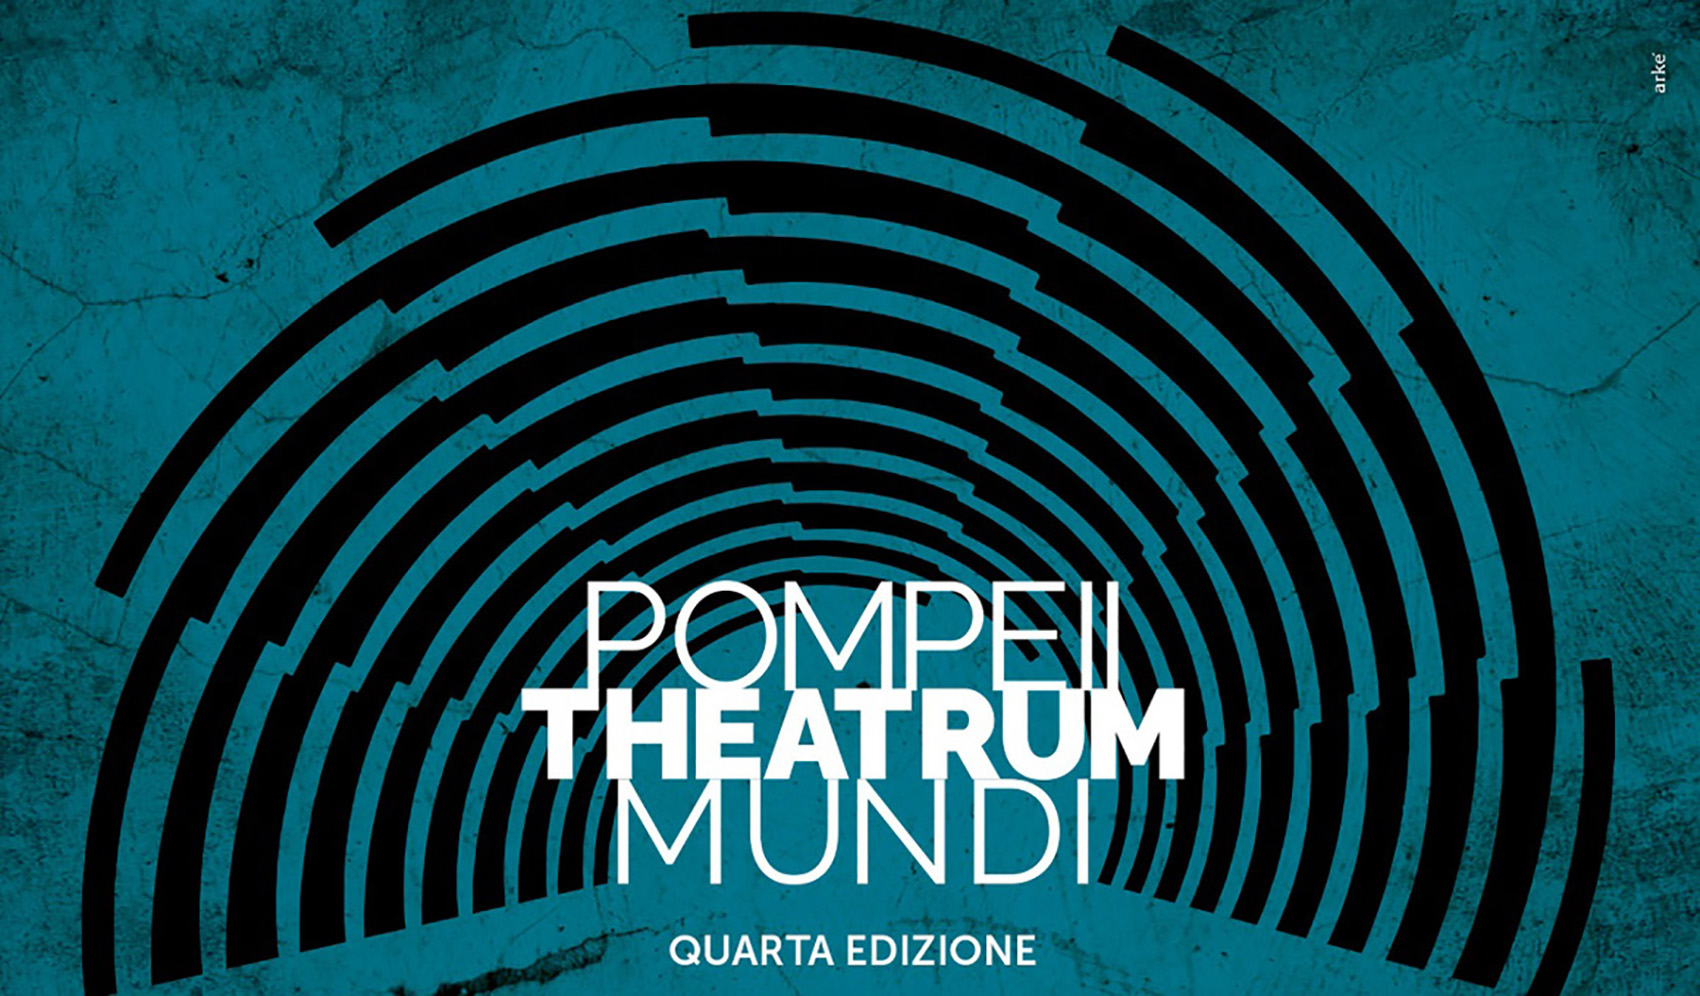 Pompeii Theatrum Mundi 2021